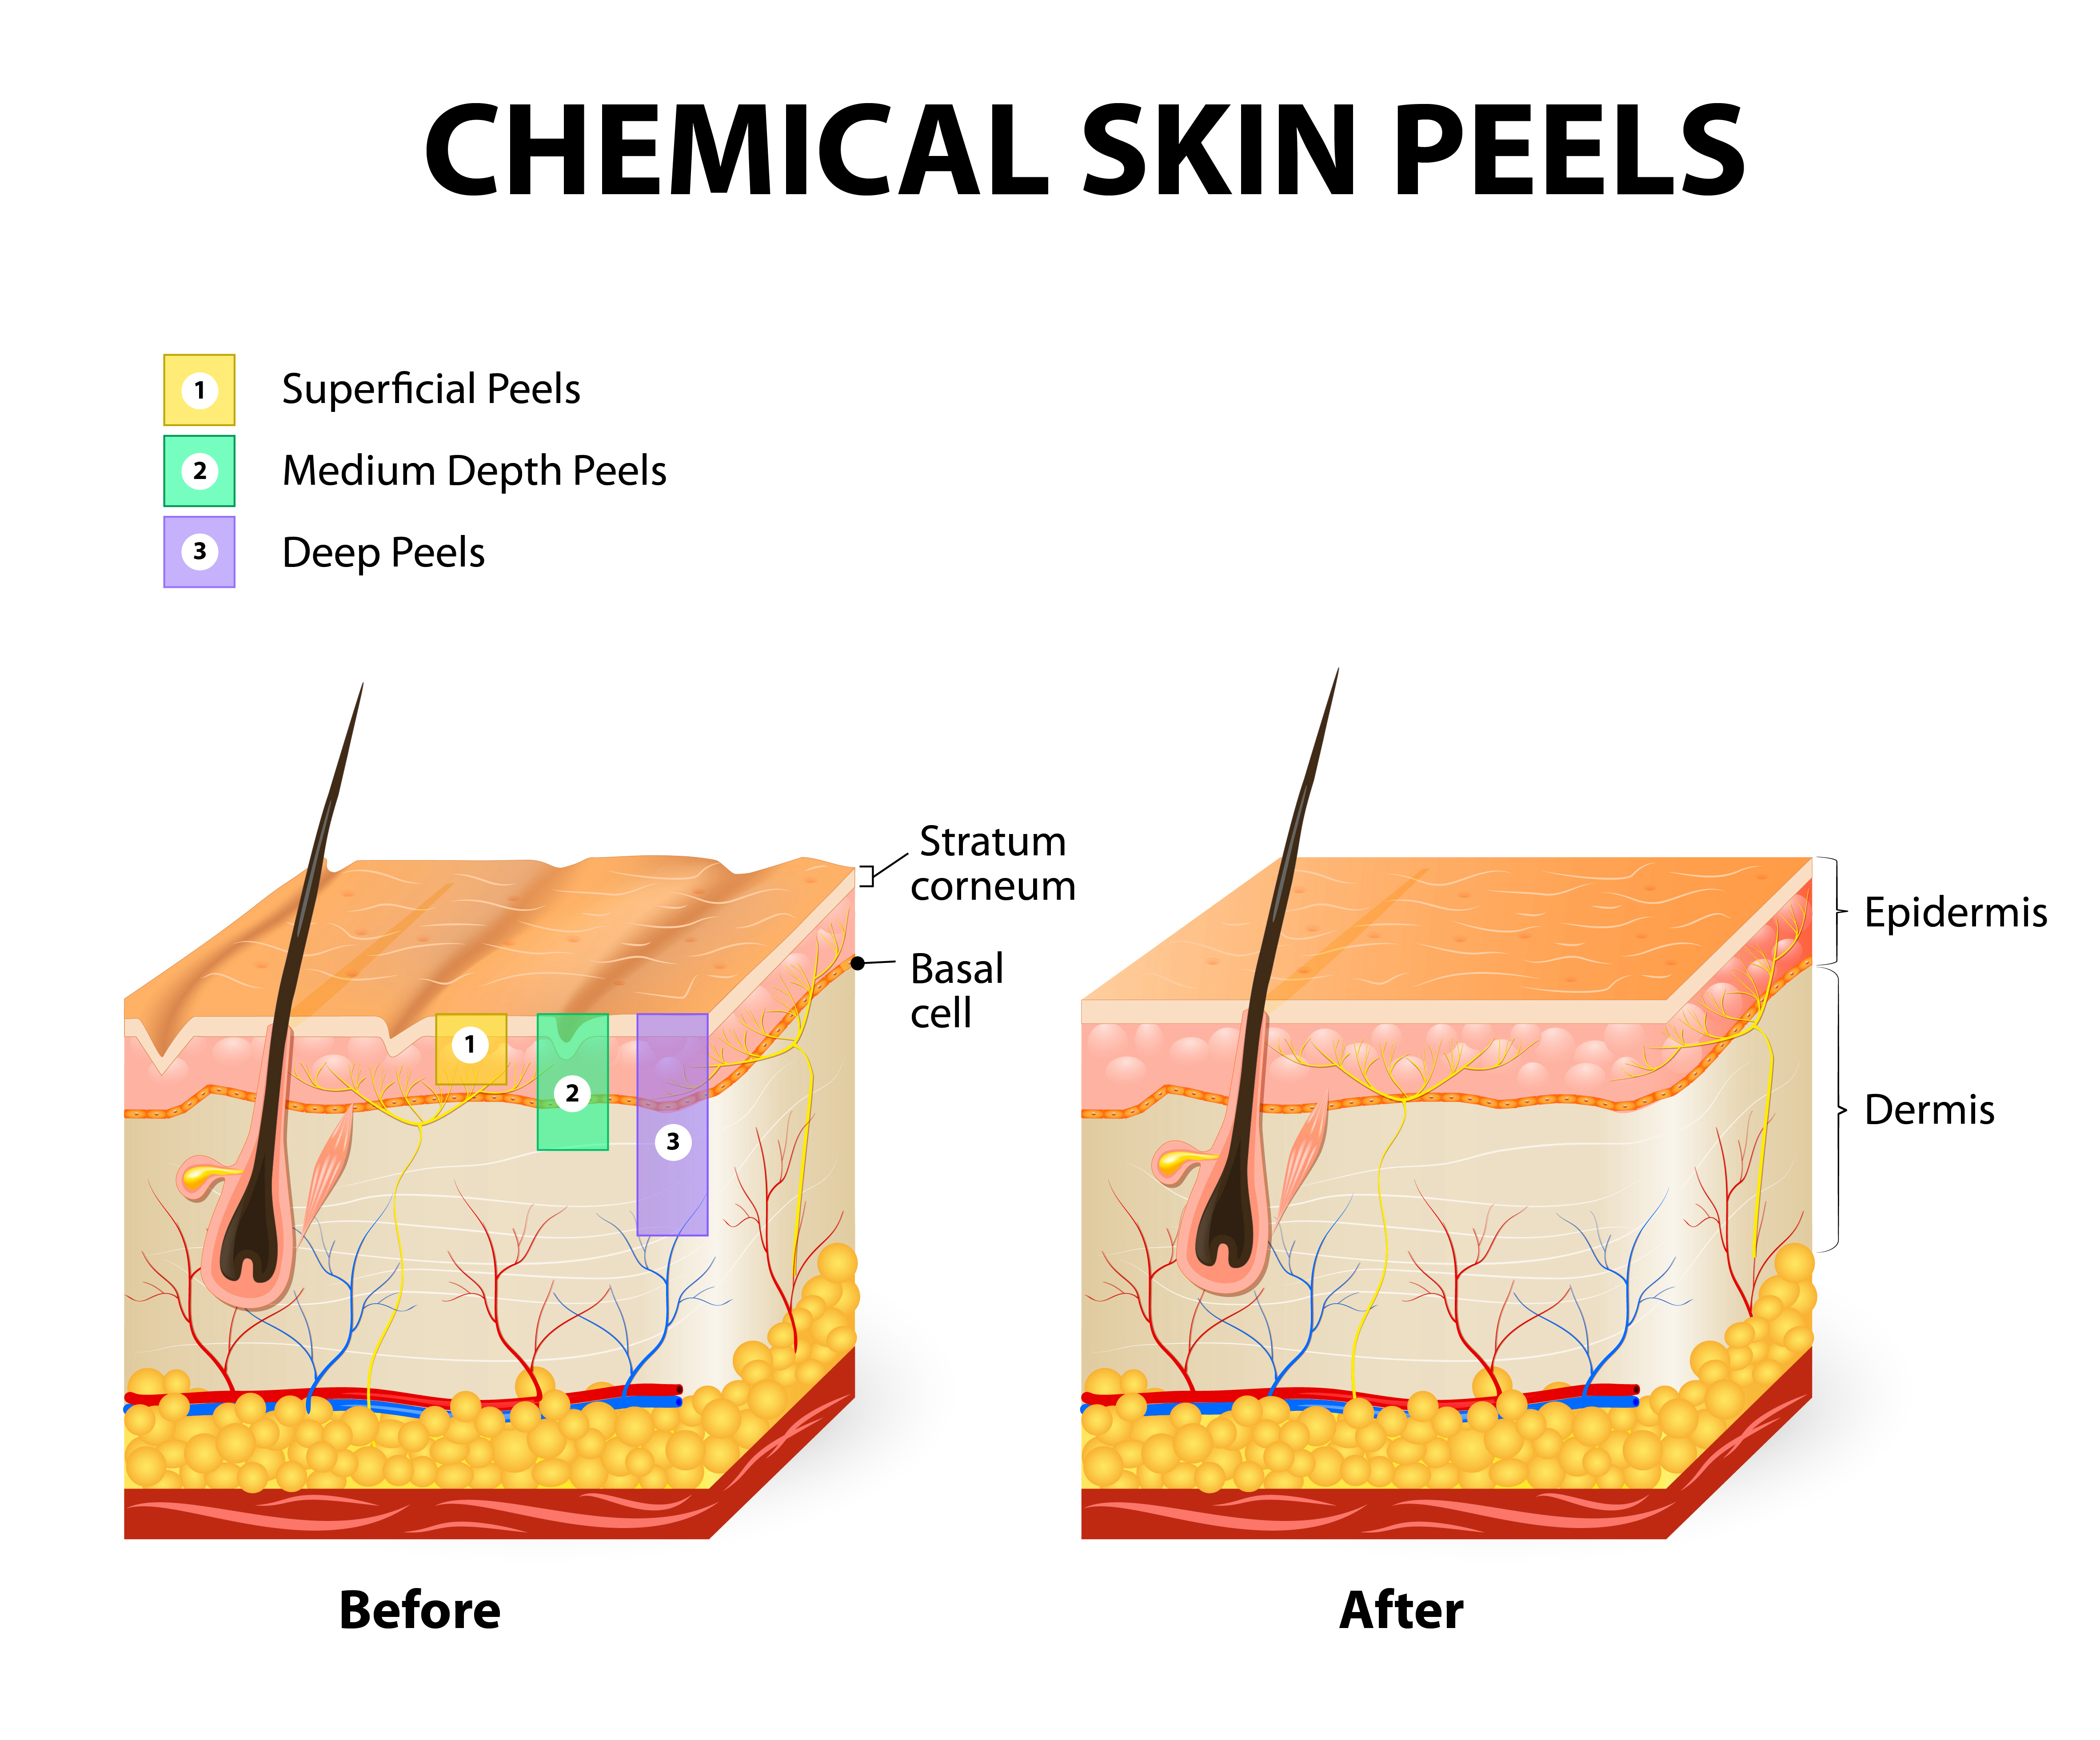 Chemical skin peels